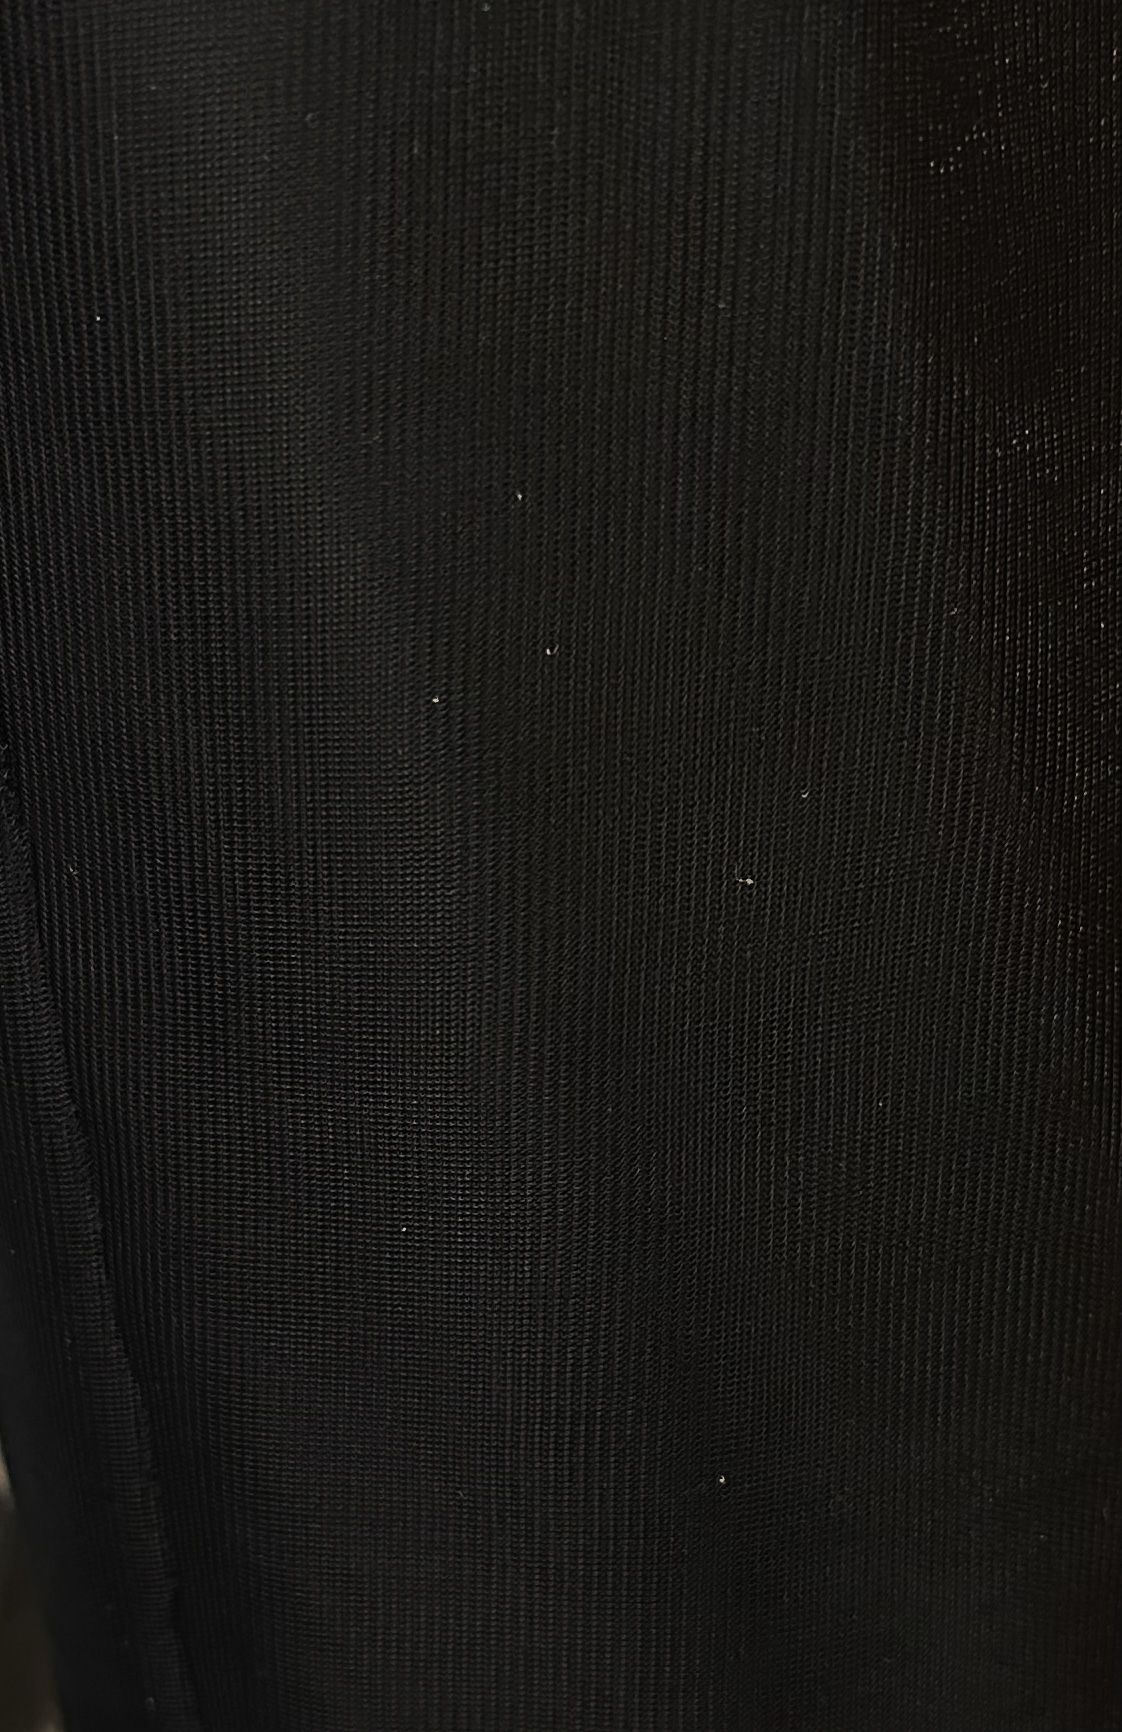 Black Nylon Chiffon Fabric